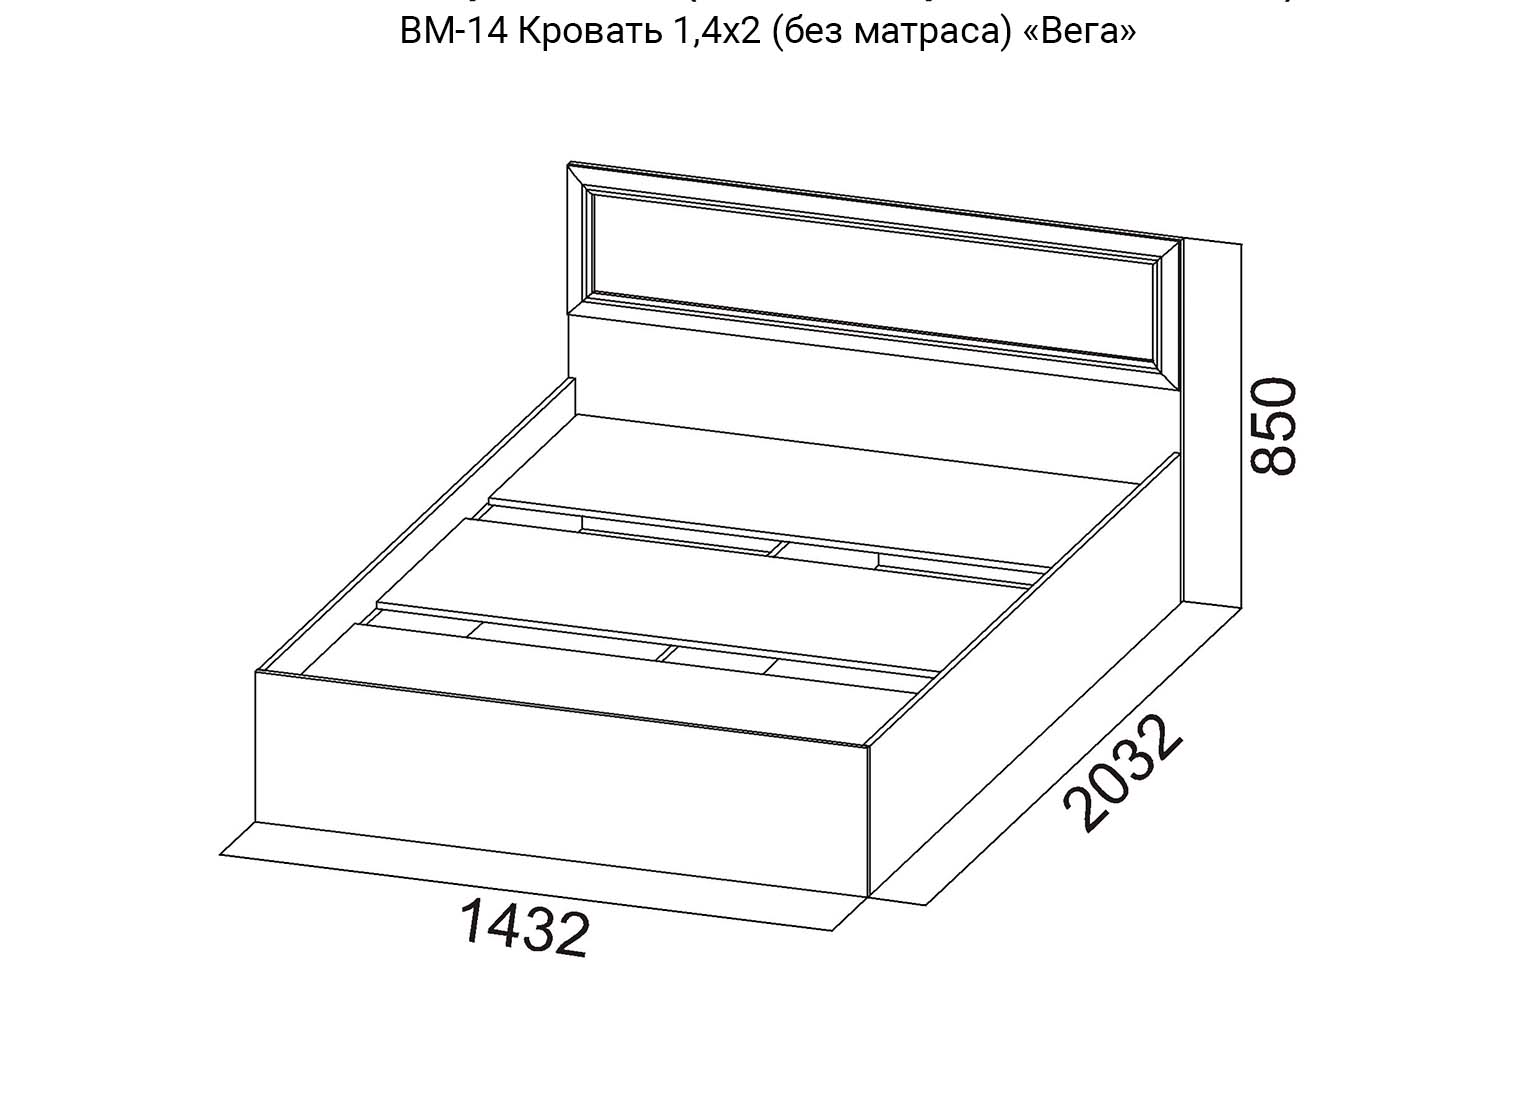 Вега ВМ-14 Кровать 1,4х2 схема SV-Мебель